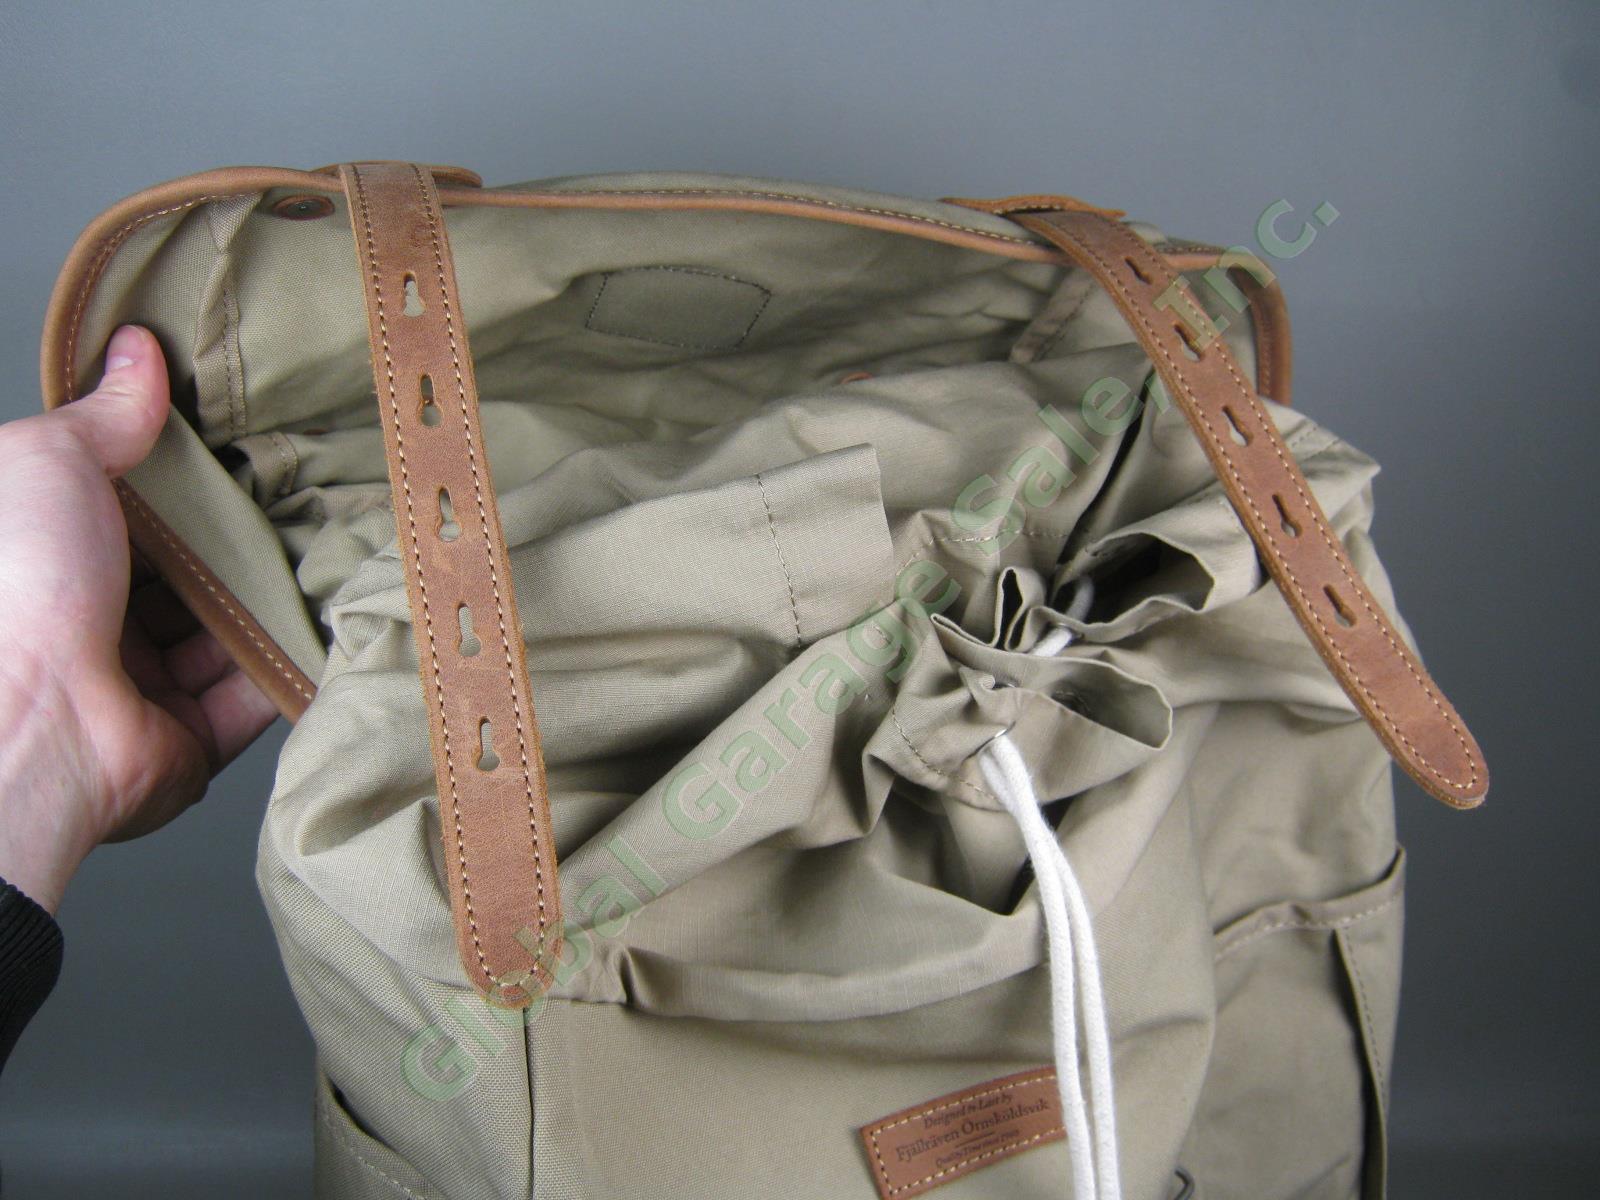 Fjallraven Rucksack No 21 Large Daypack Backpack 24206 Sand Color G-1000 VG COND 7